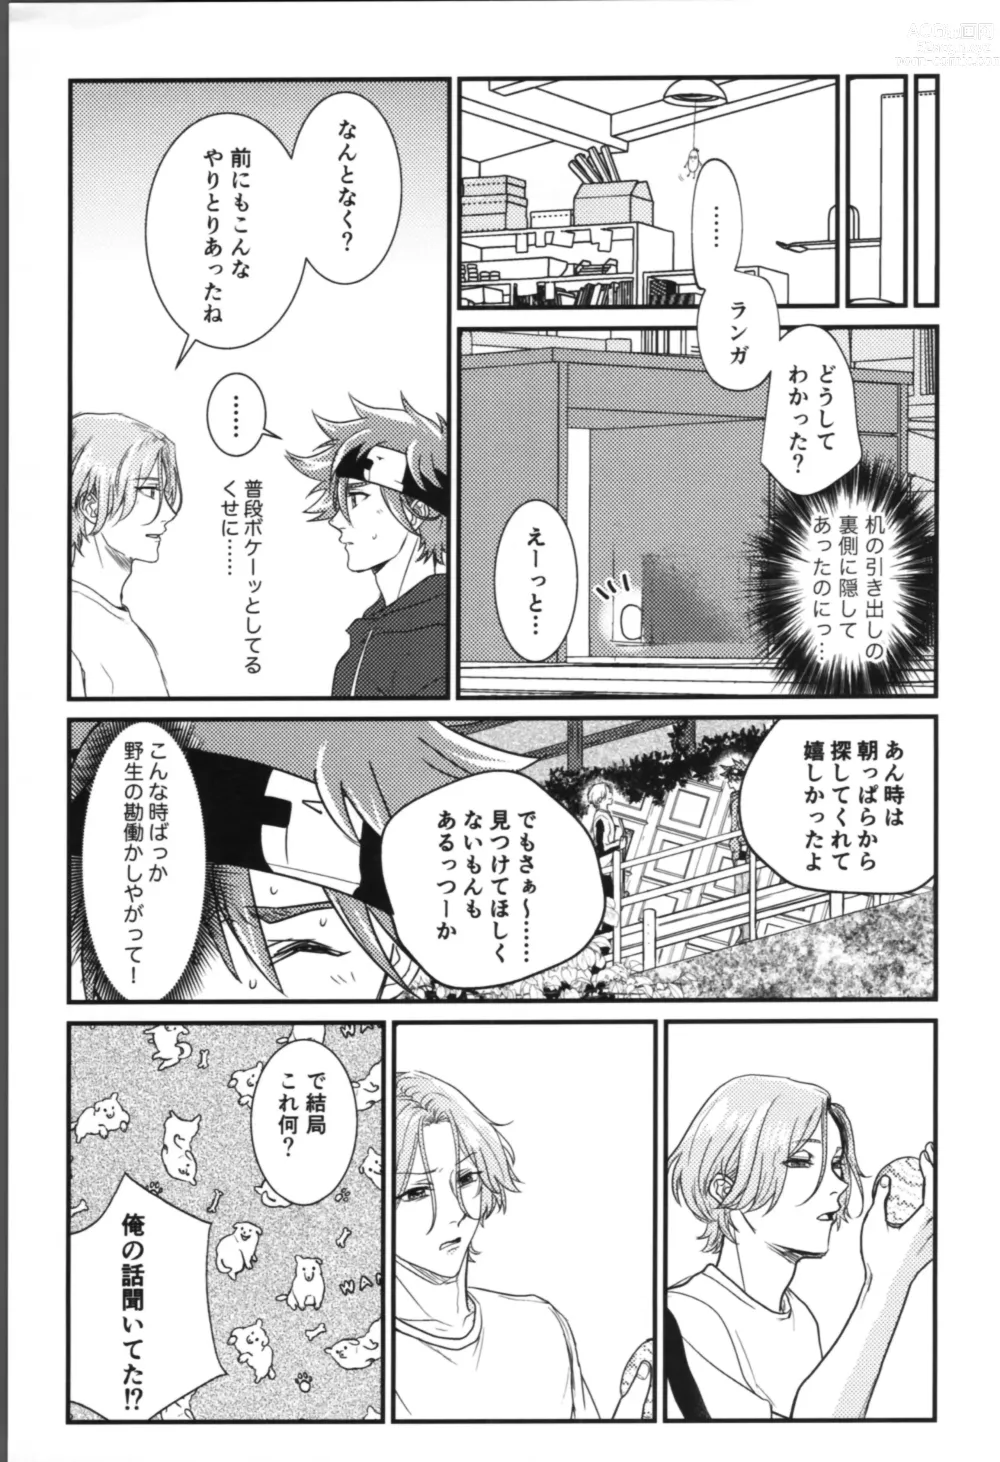 Page 7 of doujinshi Onaji ana no kijimuna